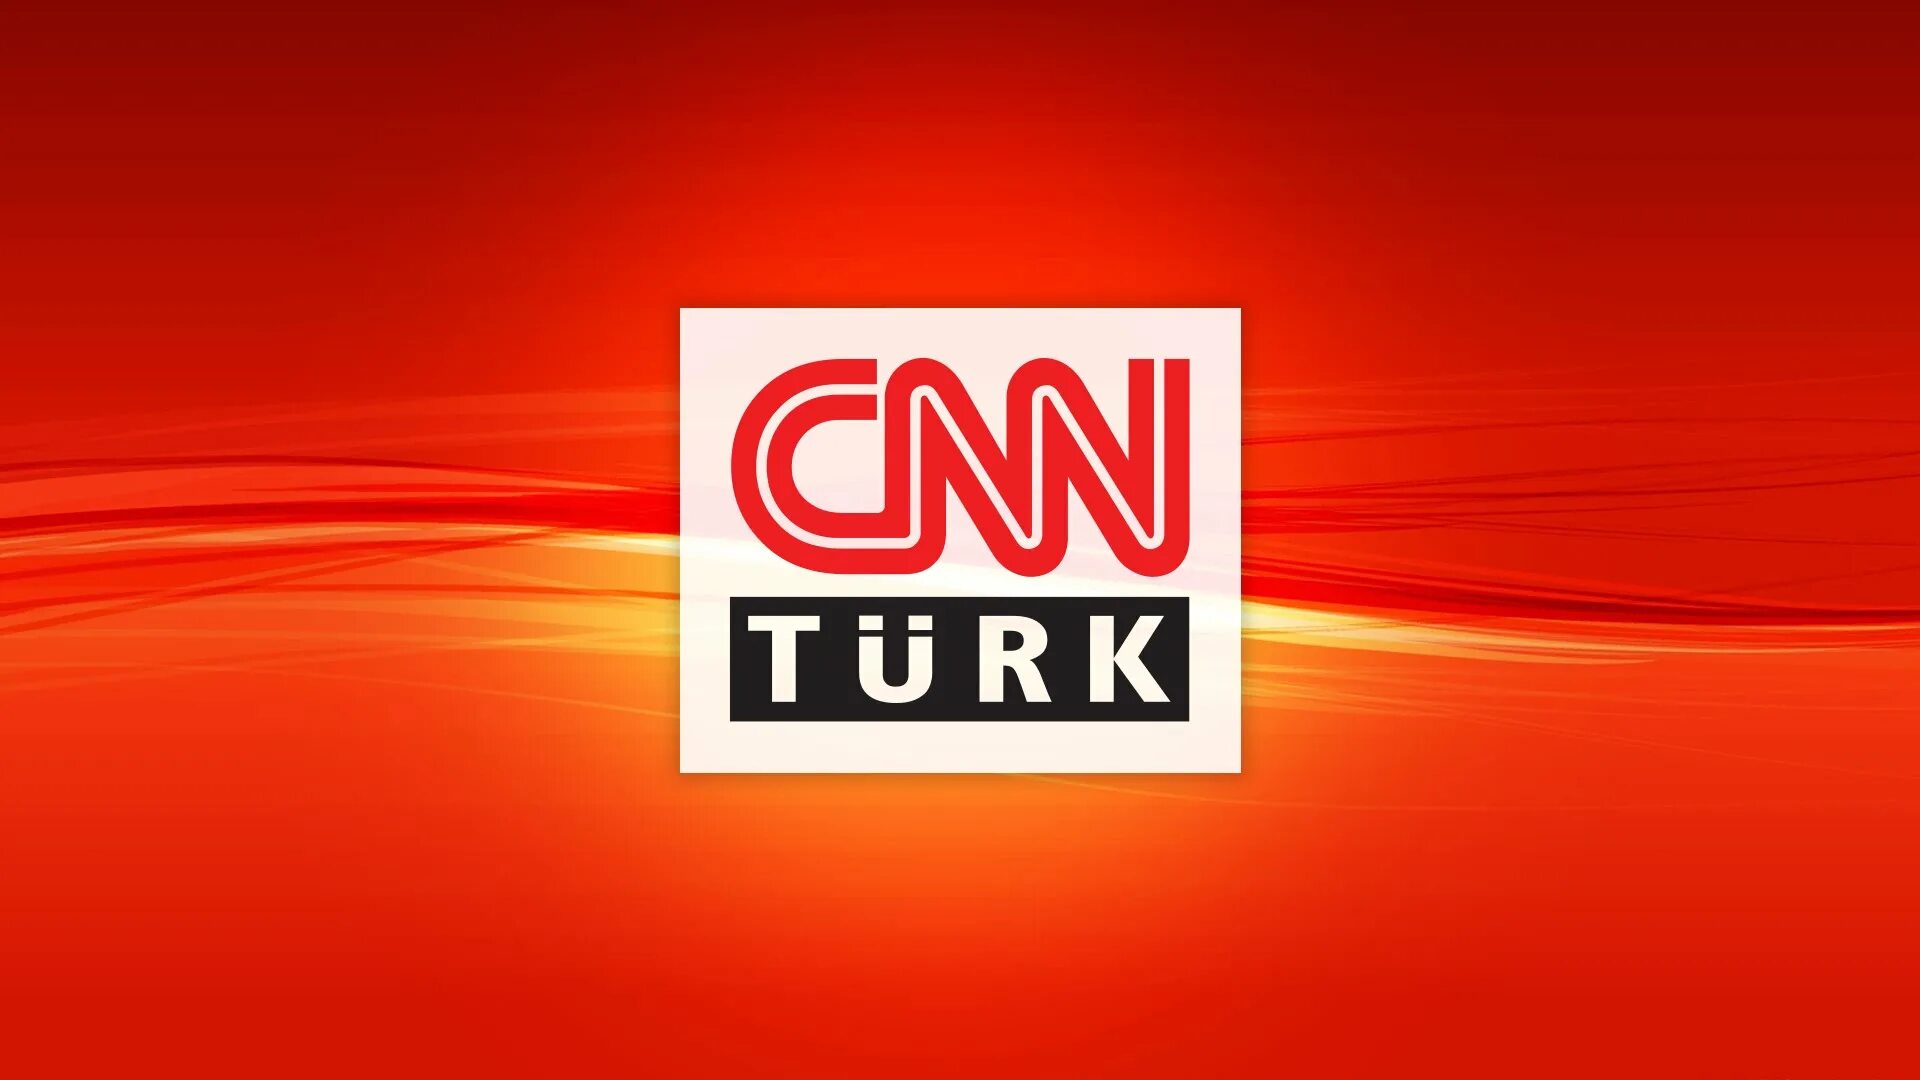 CNN. CNN TV. СНН турк. CNN Turk logo. Рабочий сайт турк тв